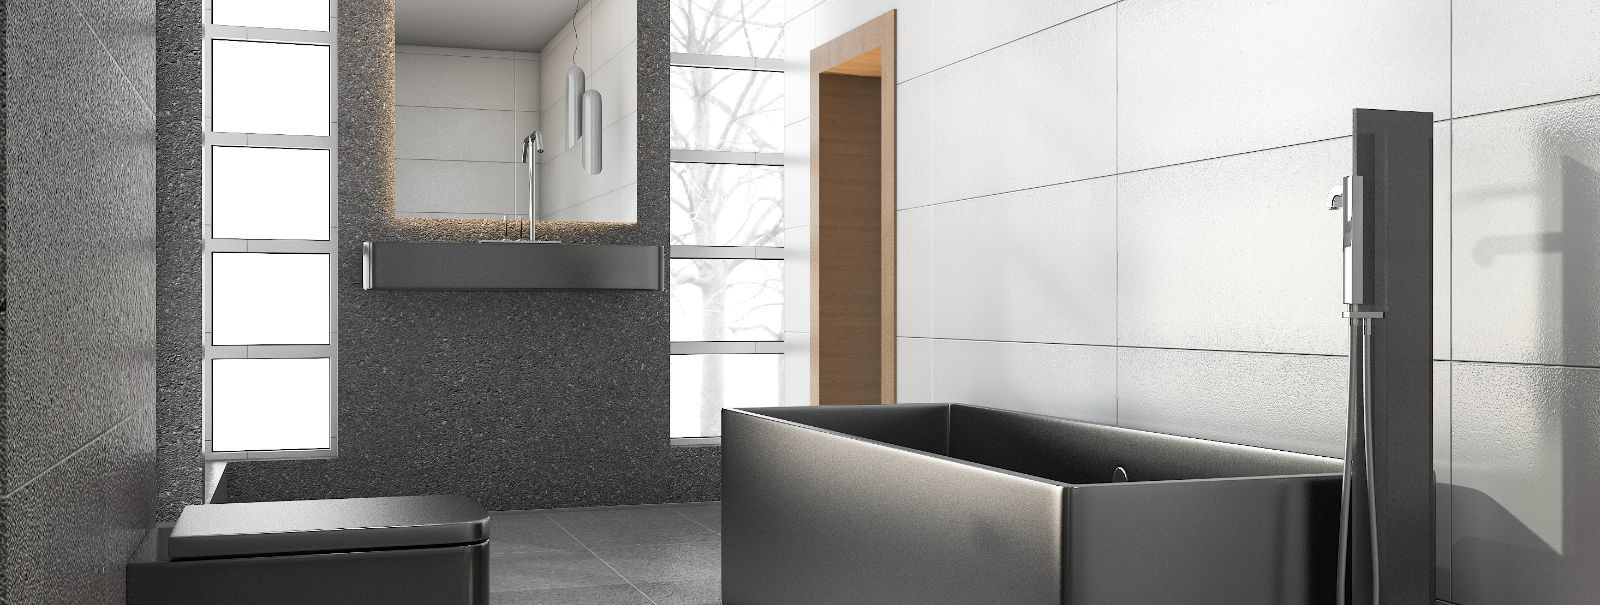 Uut aastat vastu võttes areneb vannitoa disain edasi, ühendades funktsionaalsuse stiiliga. Plaatimine on kriitiline element vannitoa esteetikas ja viimaste tren